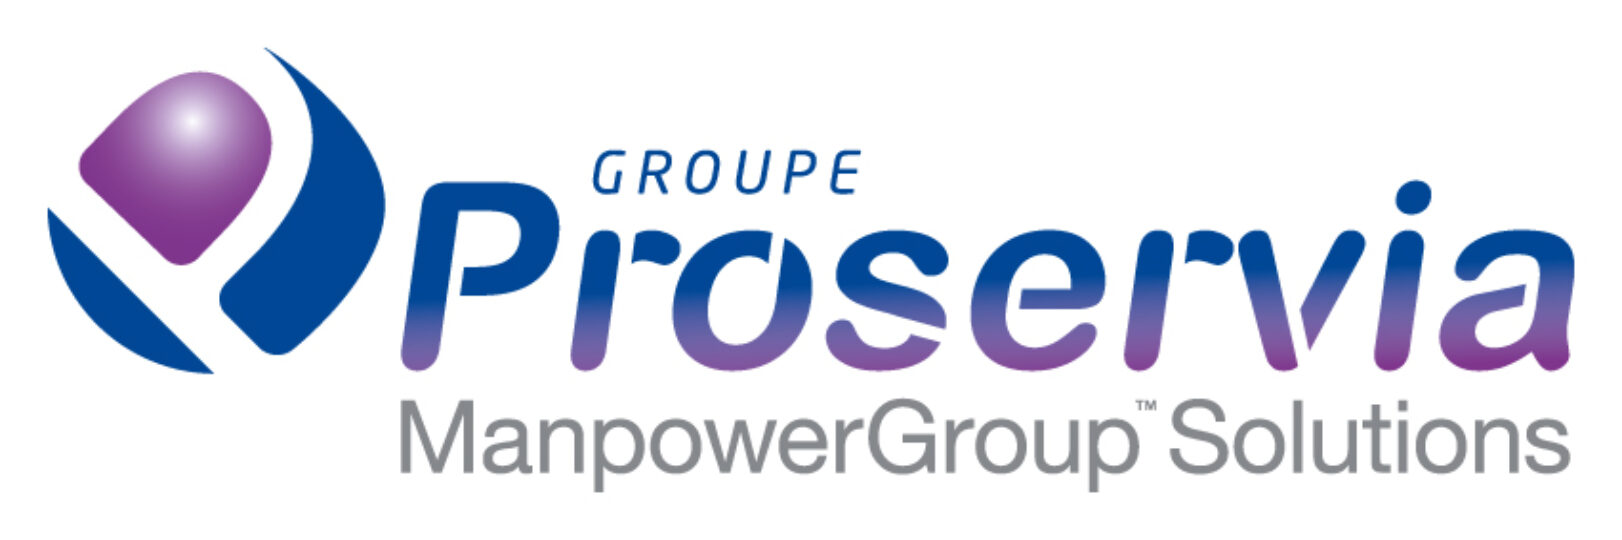 ManpowerGroup fait l’acquisition du bloc majoritaire du Groupe Proservia